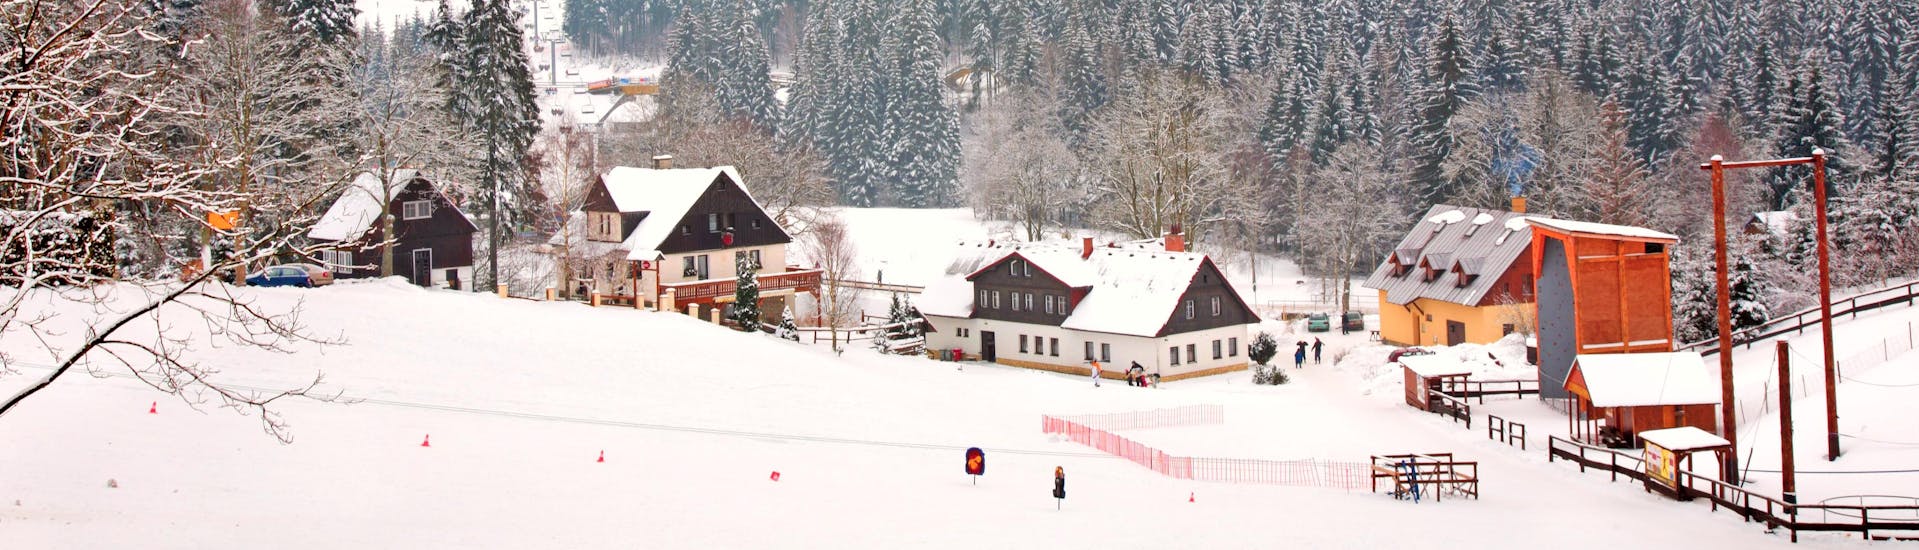 Small town covered in snow in Čertova Hora - Harrachov in Czech Republic.